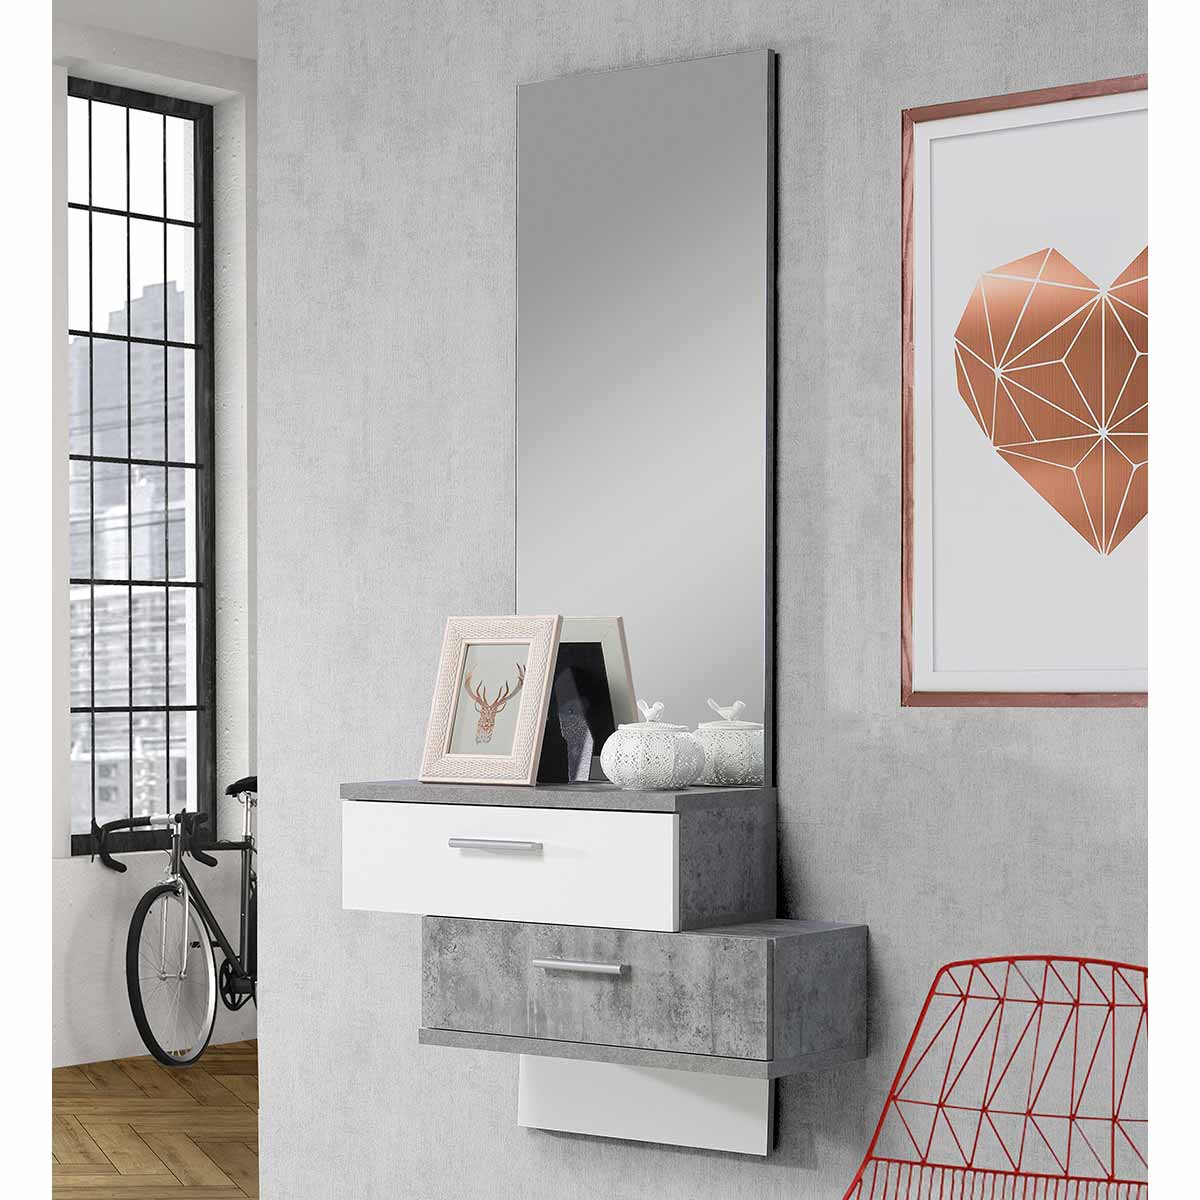 Mueble recibidor con espejo vertical, Recibidores baratos